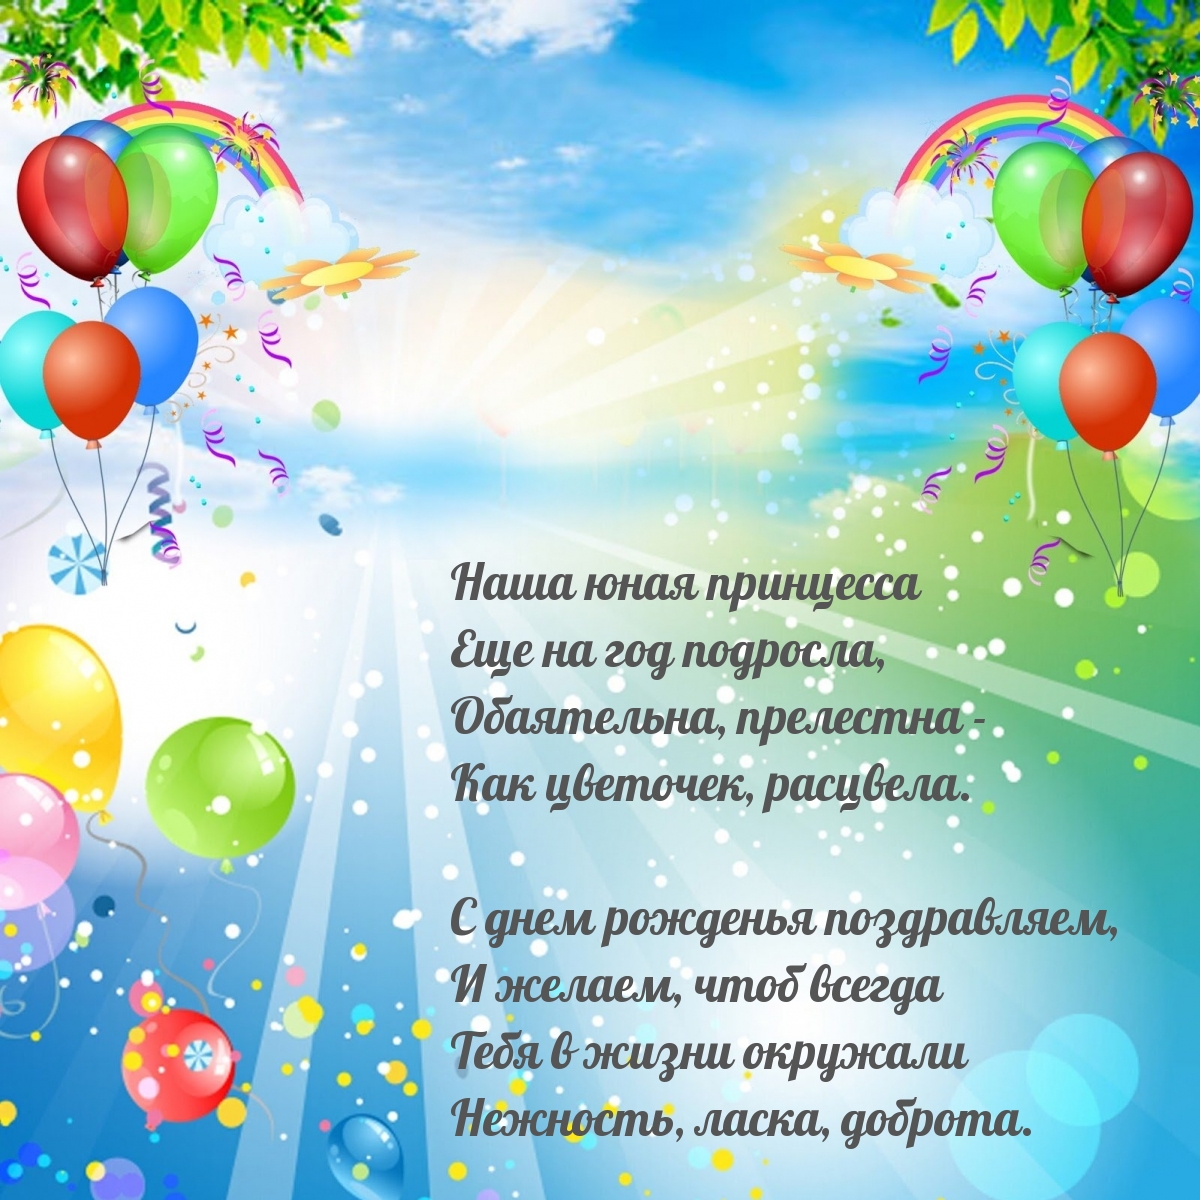 Песни с днем рождения на русском языке. Песня с днём рождения. Песенка поздравление с днем рождения. Песни поздравления с днём рождения. Поздравления с днем рождения в песнях.